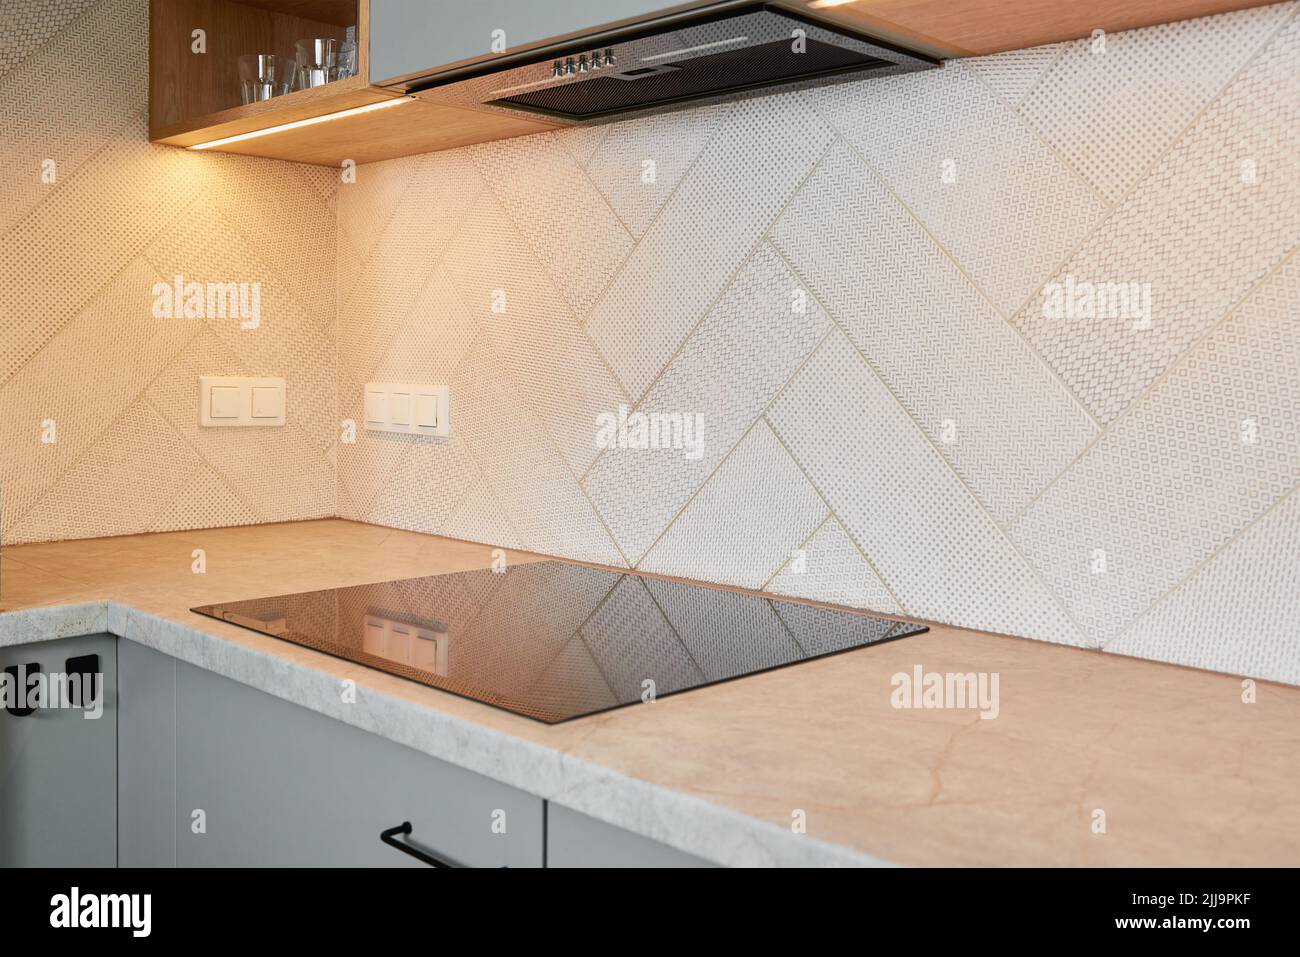 Cucina interna con piano cottura a induzione e mobili in legno, moderno apparecchio da cucina Foto Stock